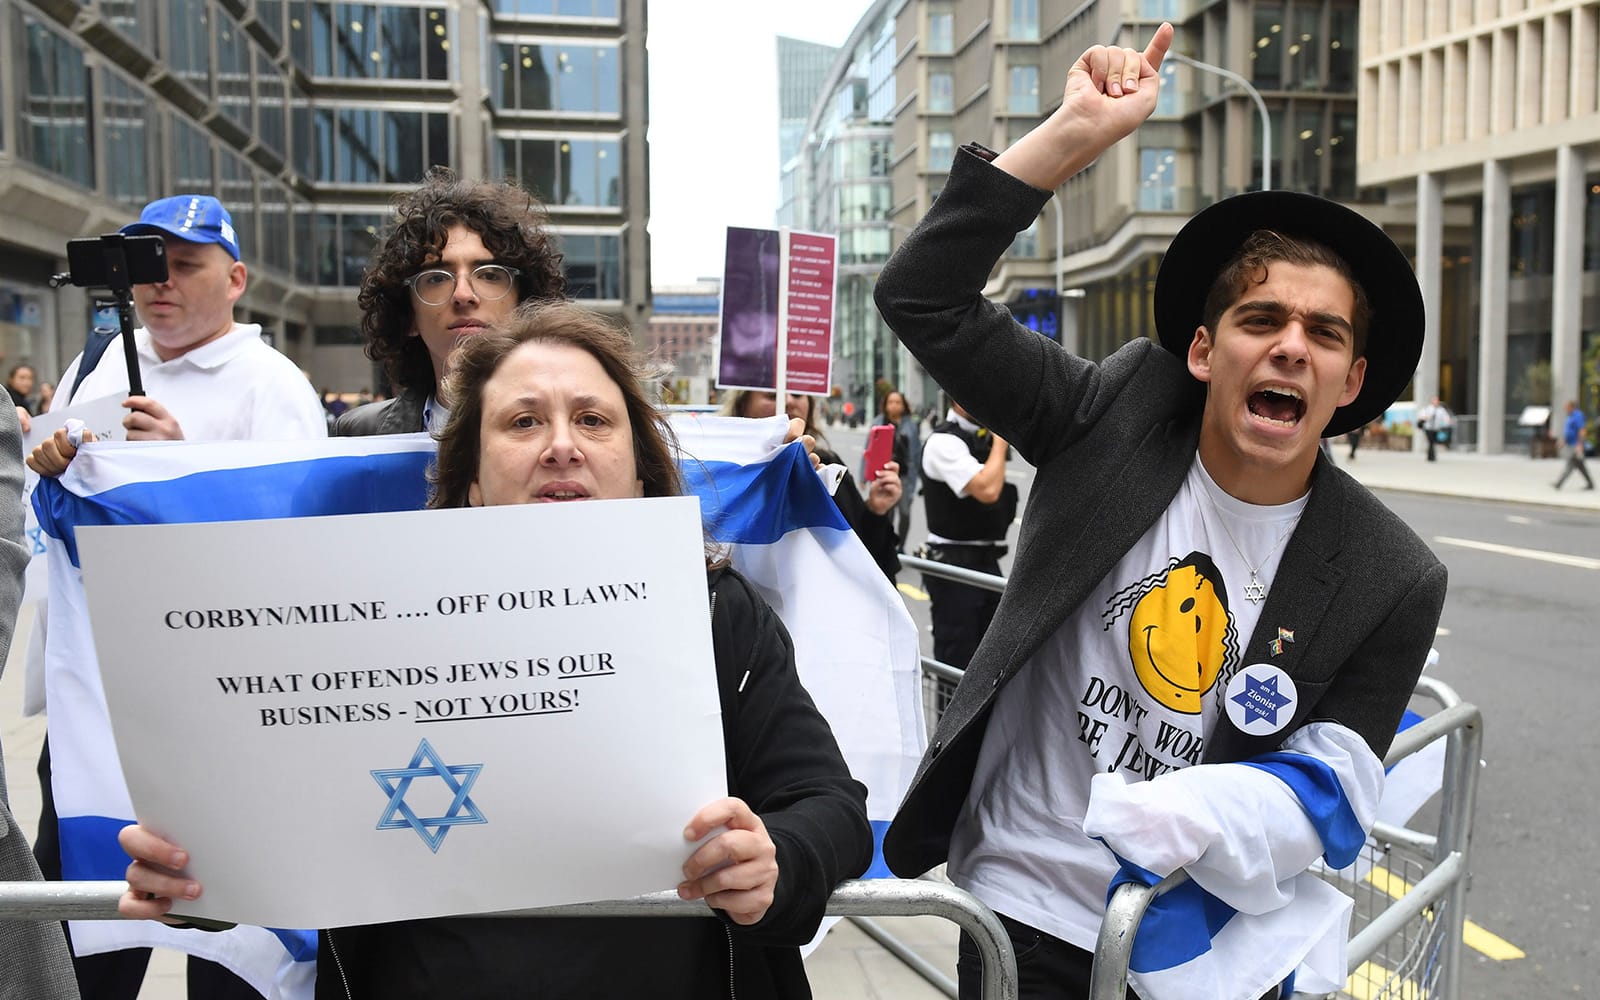 הפגנה מחוץ לישיבה של הוועד הפועל הלאומי של הלייבור שדן באנטישמיות, לונדון, 4 בספטמבר 2018 (צילום: Stefan Rousseau/PA via AP)